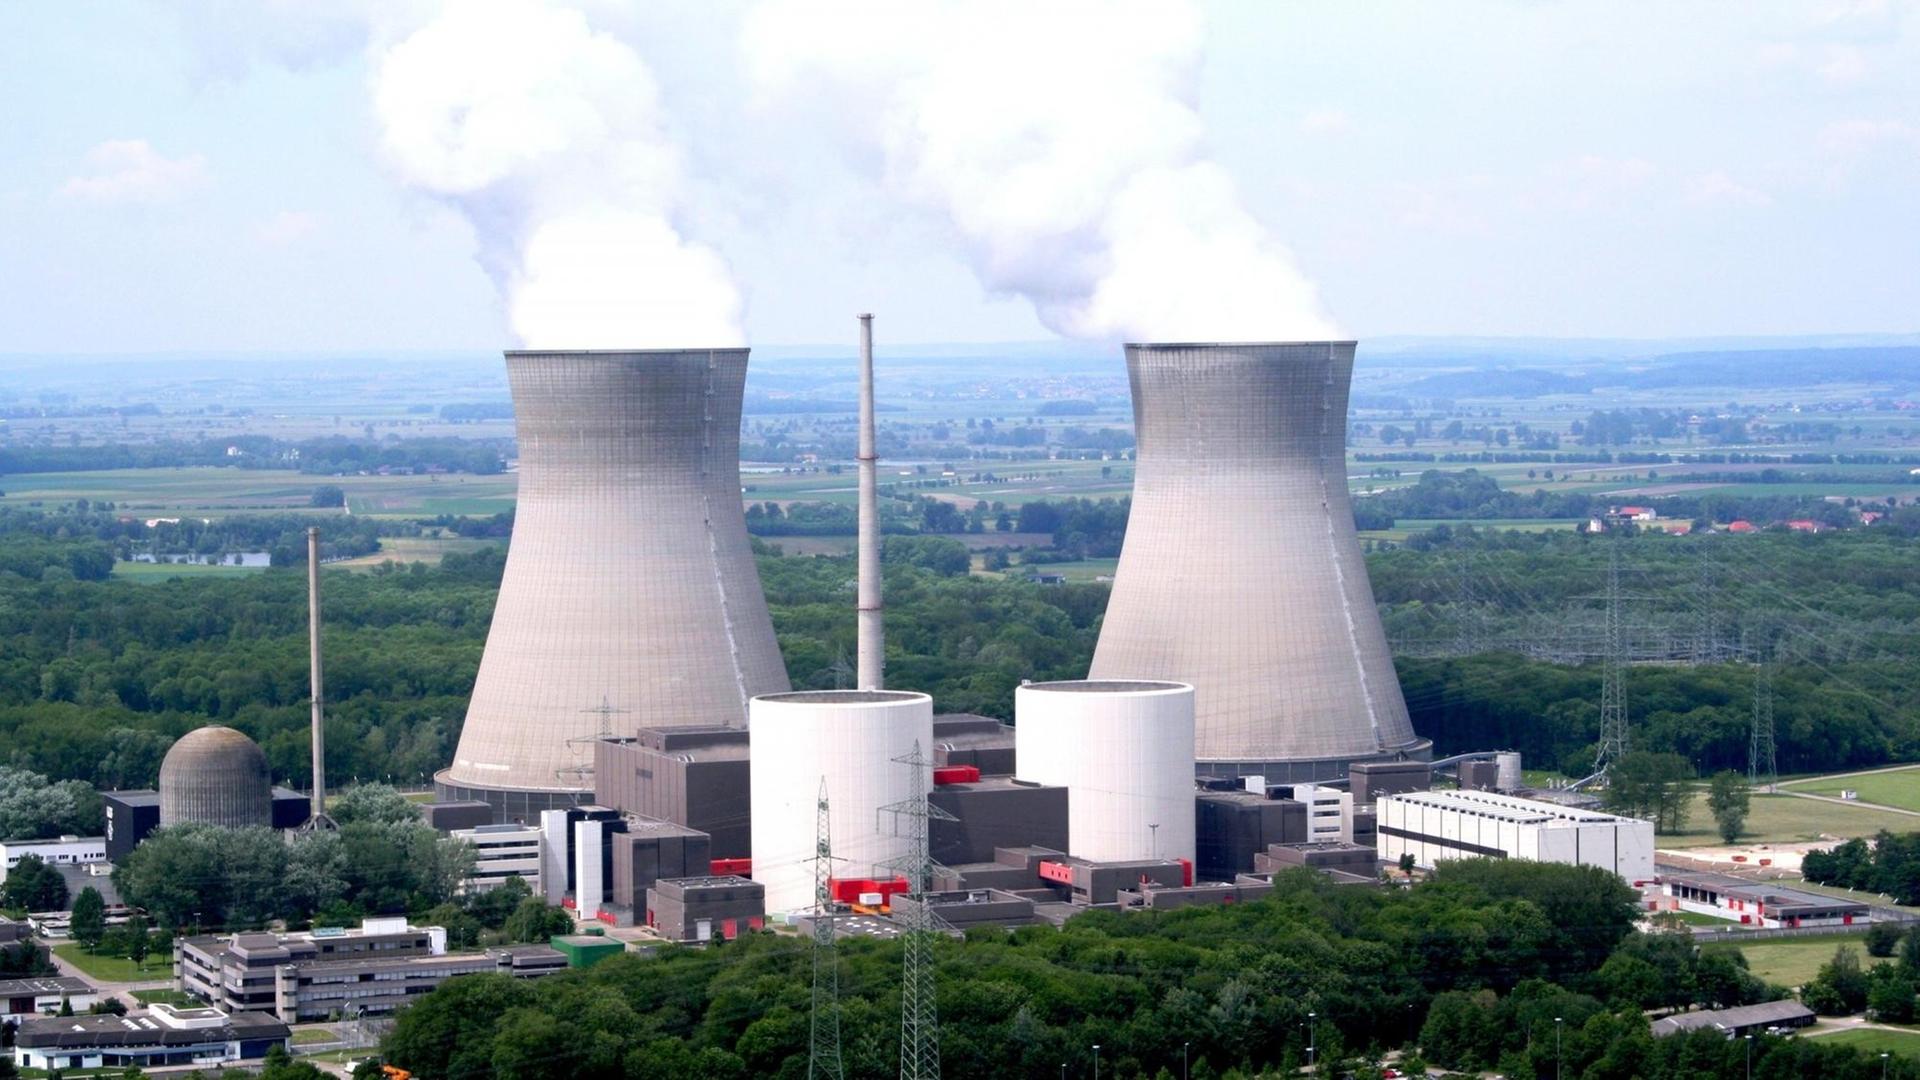 Das Atomkraftwerk Grundremmingen mit seinen großen Kühltürmen in einer Luftaufnahme.